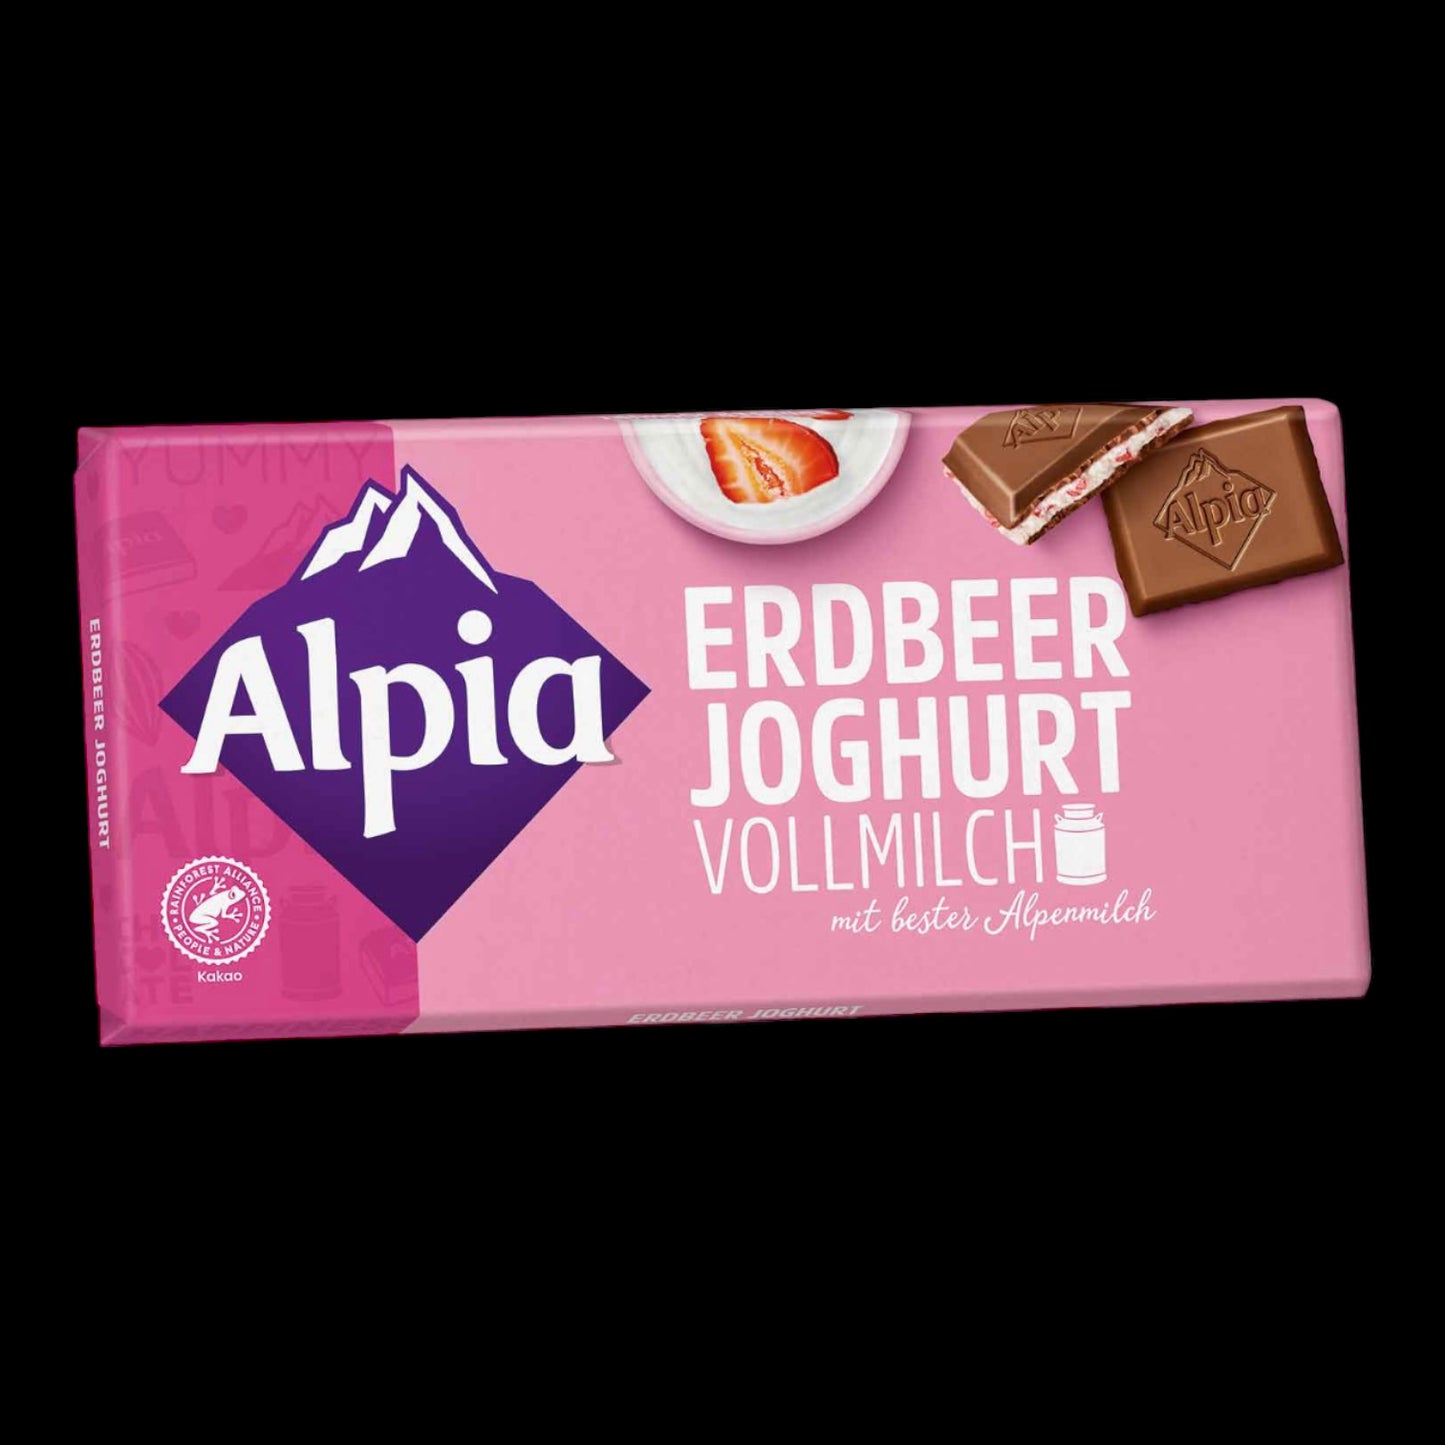 Alpia Erdbeer Joghurt Vollmilch 100g